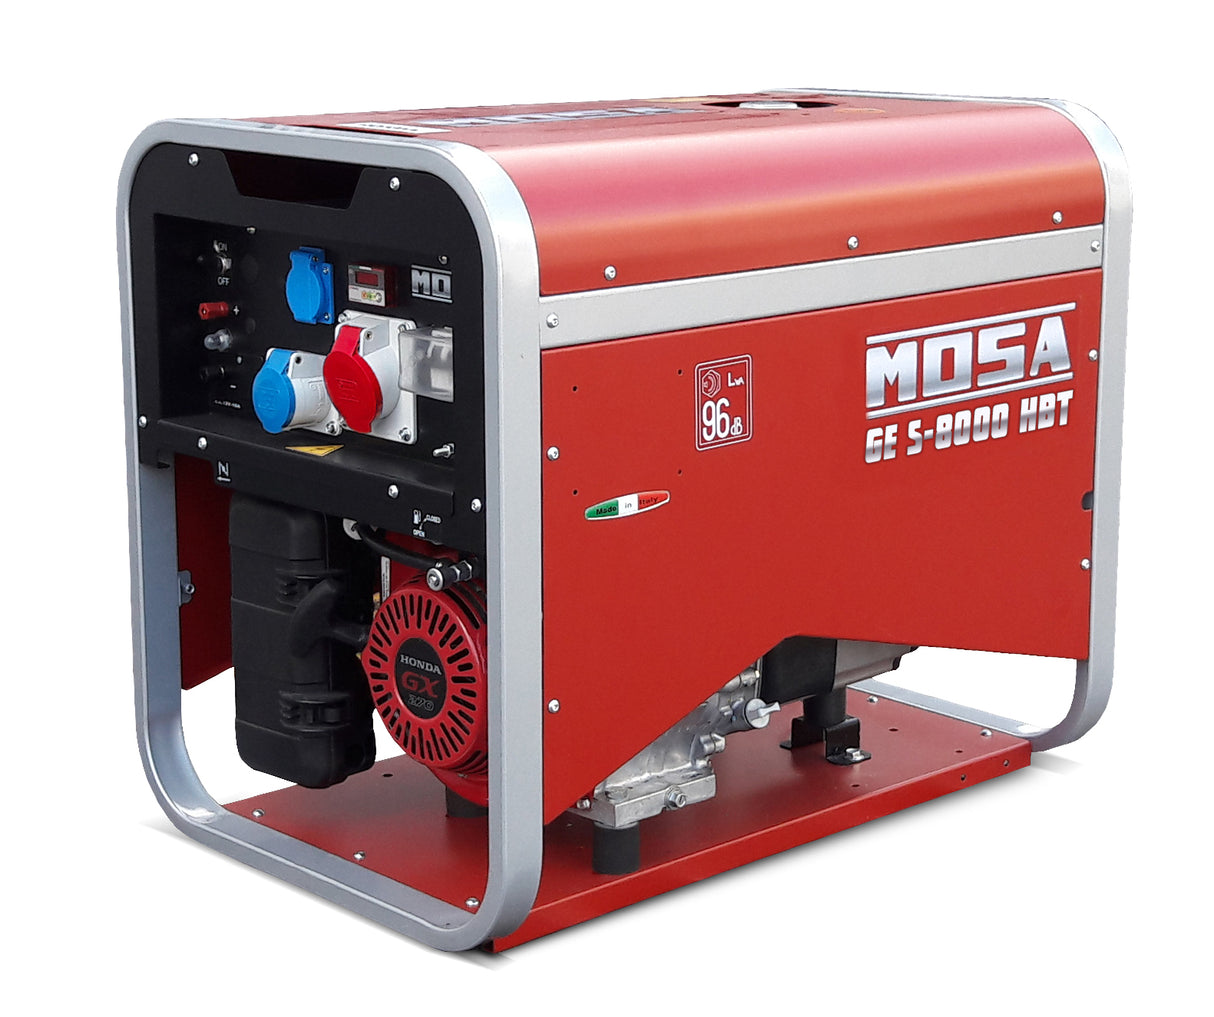 Tragbarer Stromerzeuger MOSA GES 8000 HBT